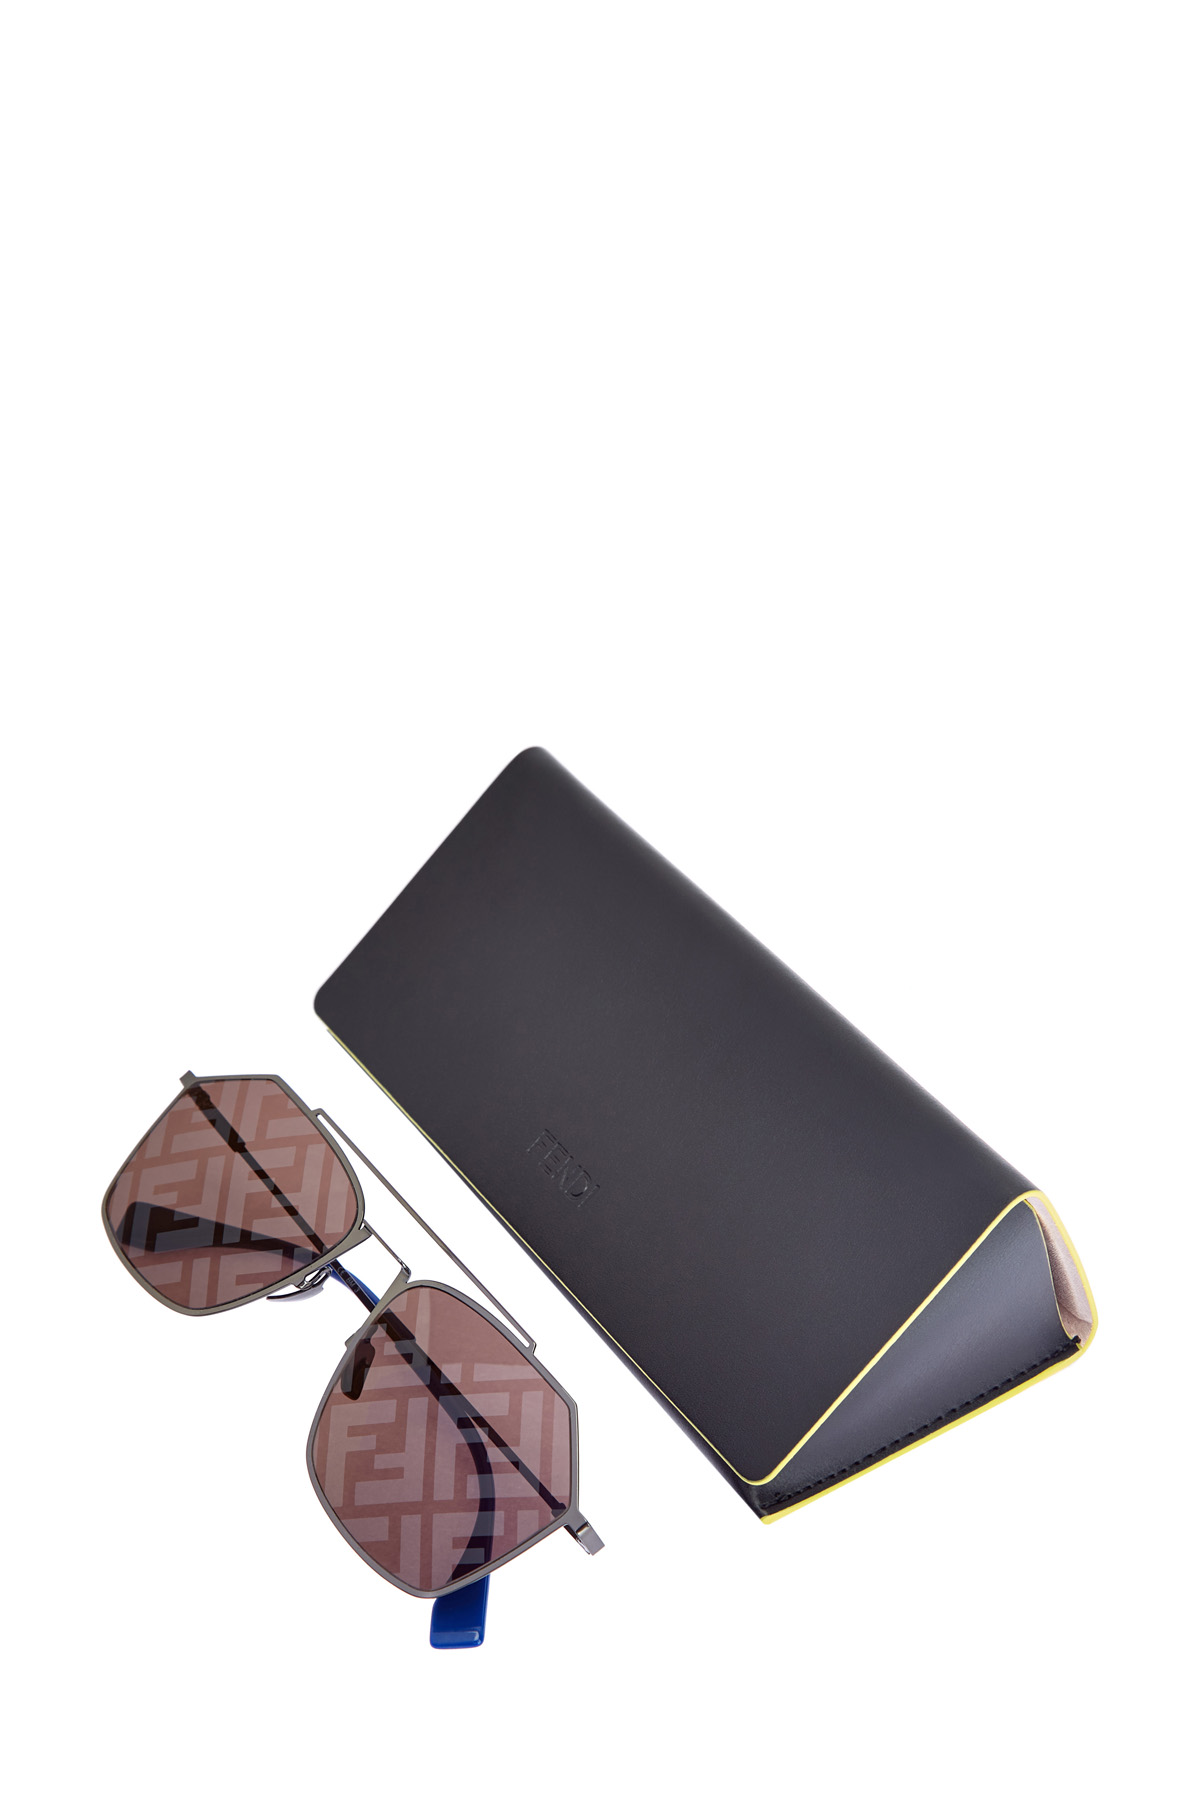 Солнцезащитные очки из легкого ацетата с запаянным принтом FF FENDI (sunglasses), цвет коричневый, размер S;M - фото 4